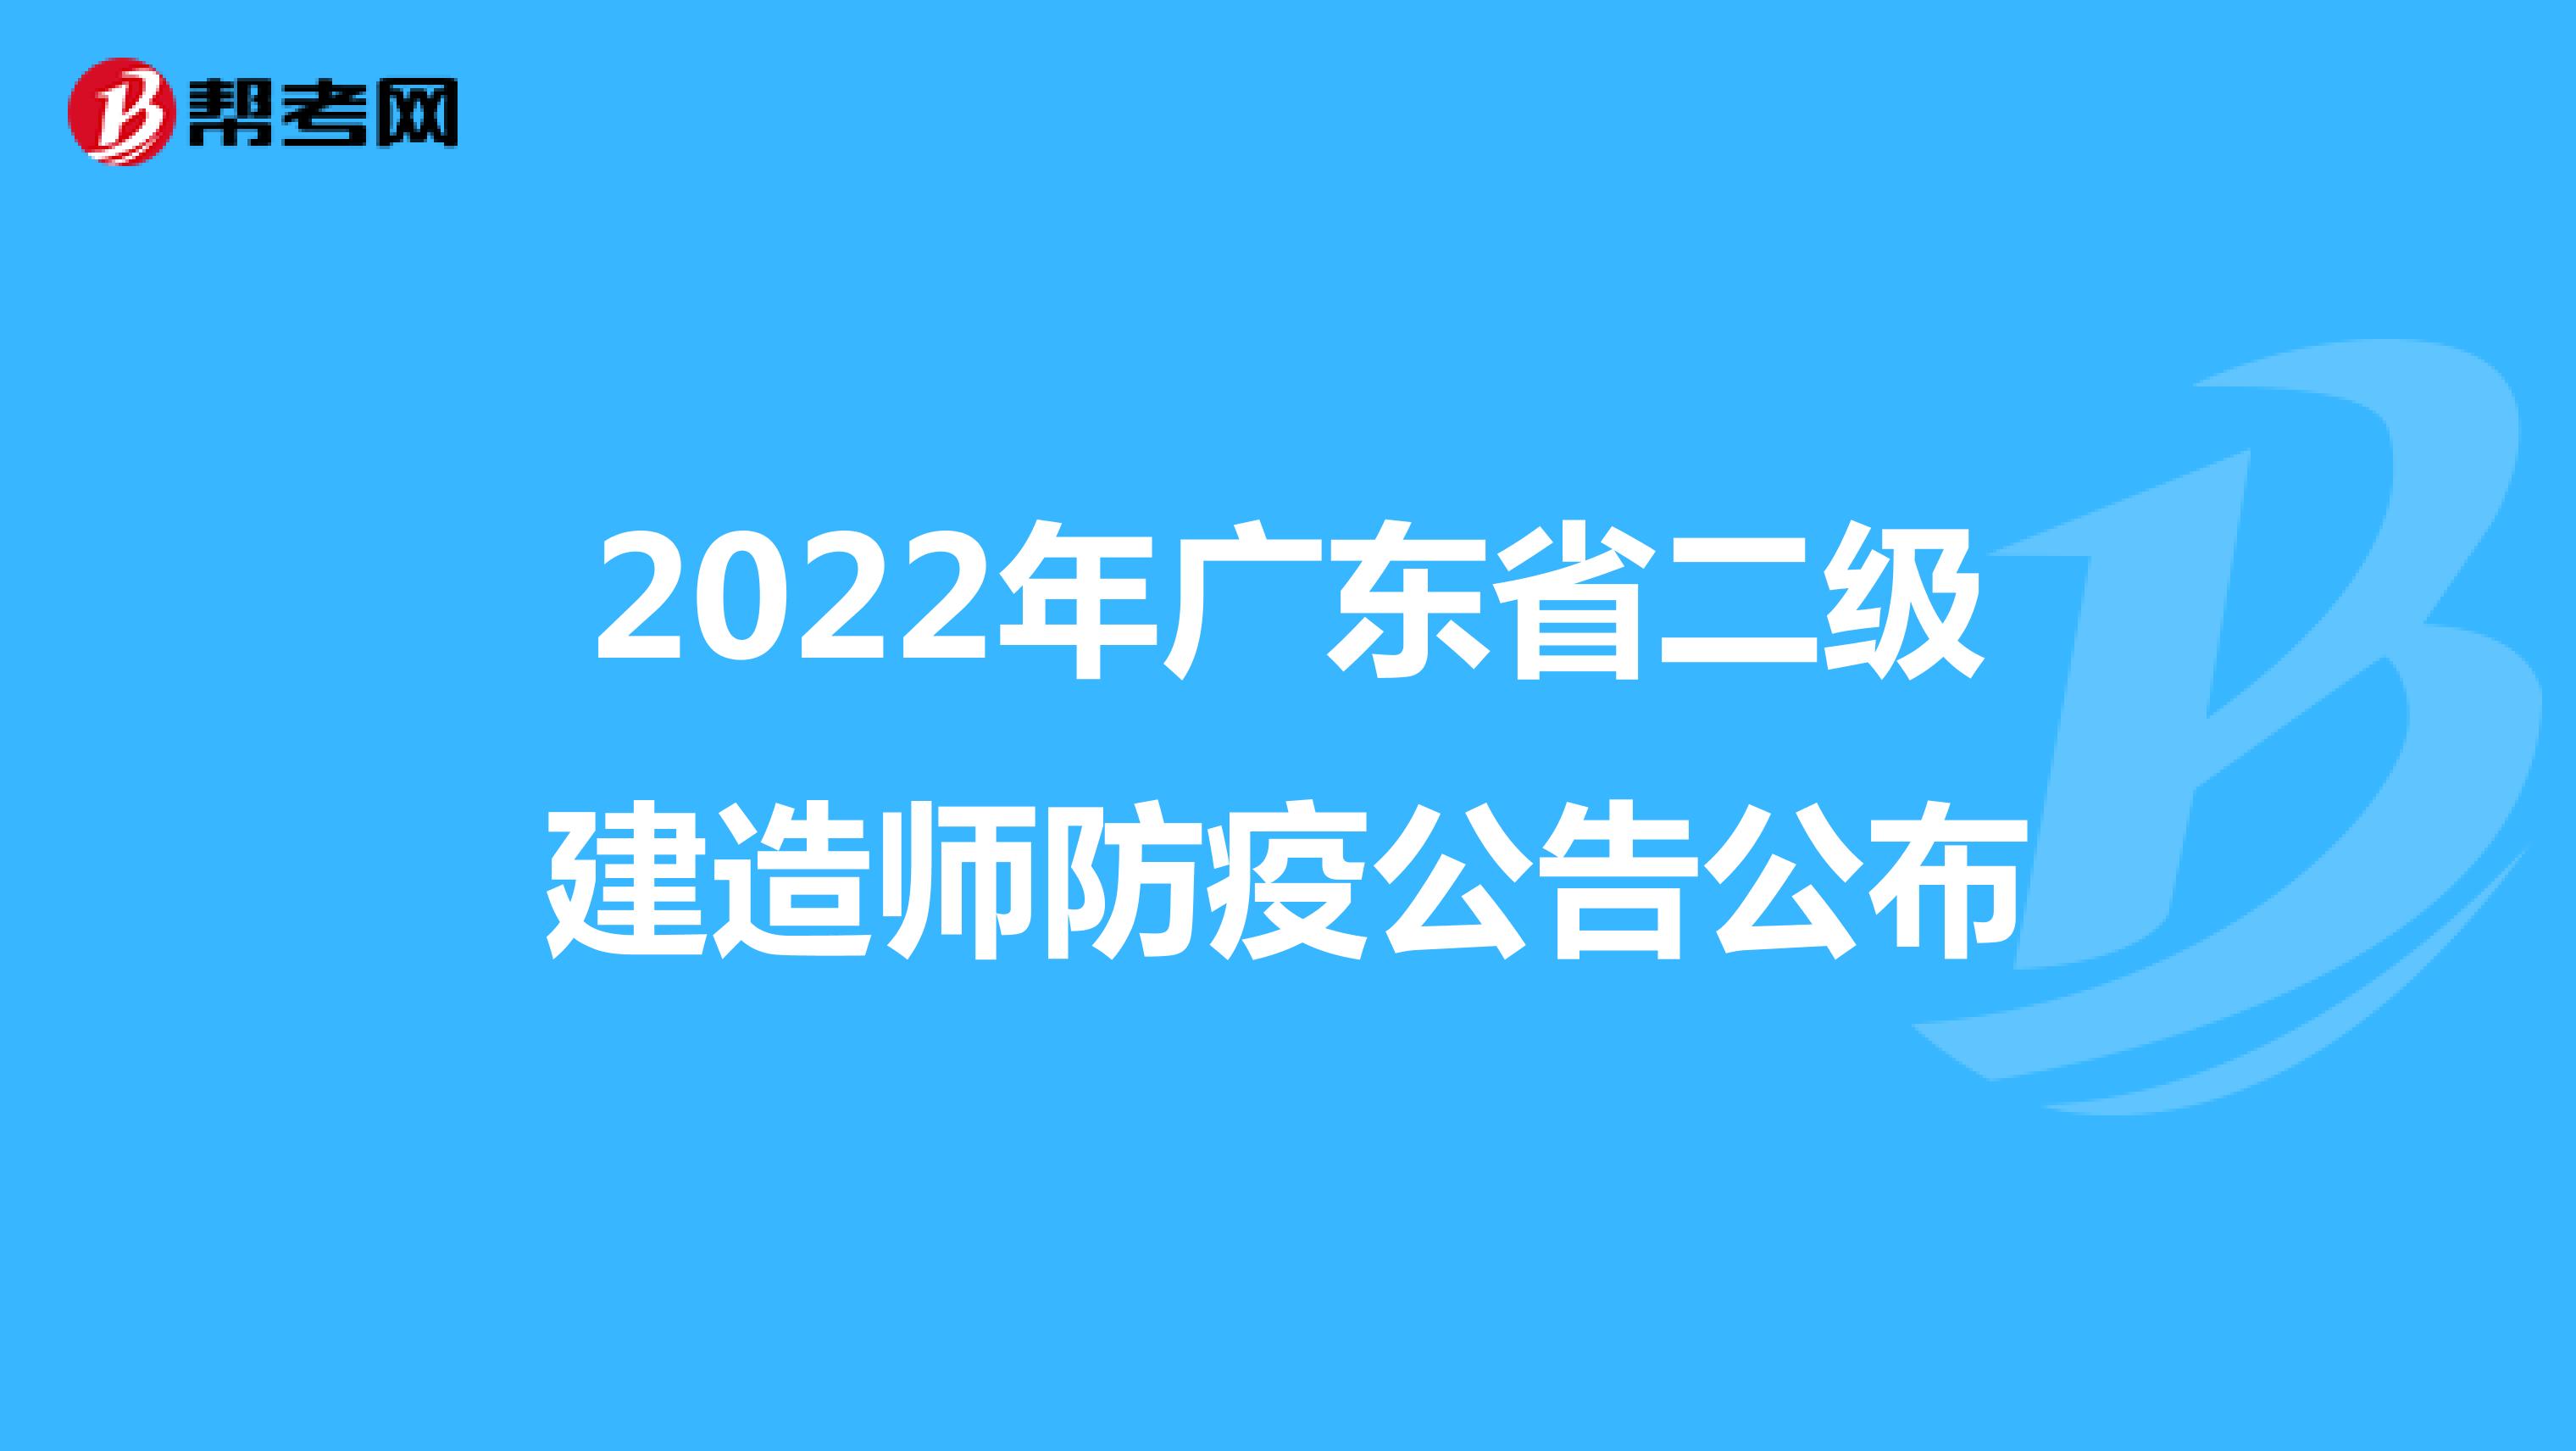 2022年广东省二级建造师防疫公告公布